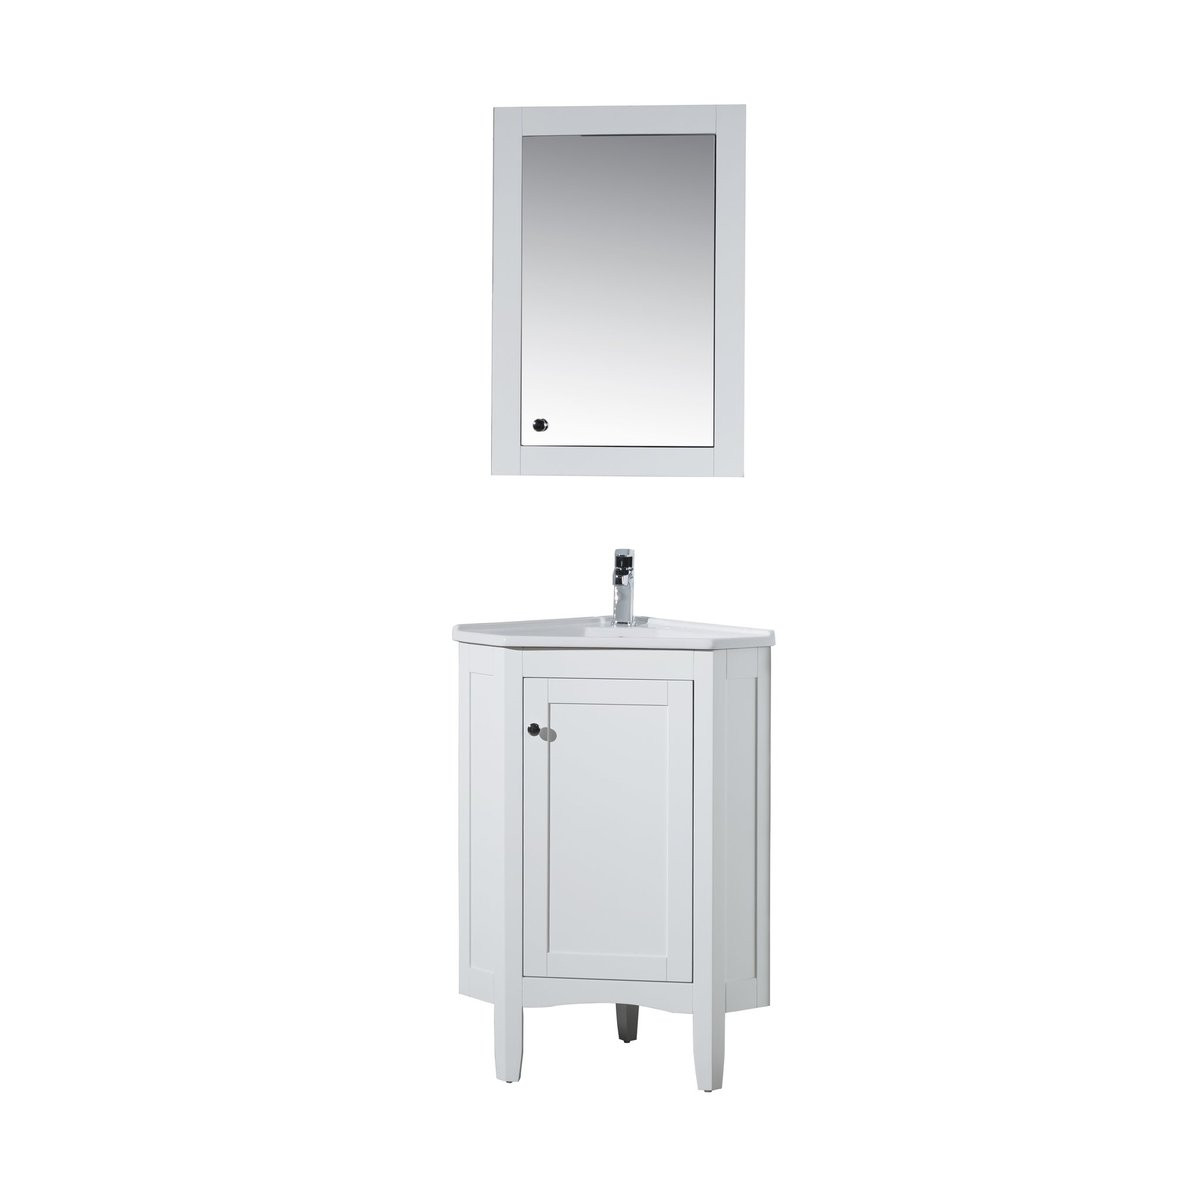 17 Inch Deep Bathroom Vanity
 Stufurhome Monte White 25 Inch Corner Bathroom Vanity with